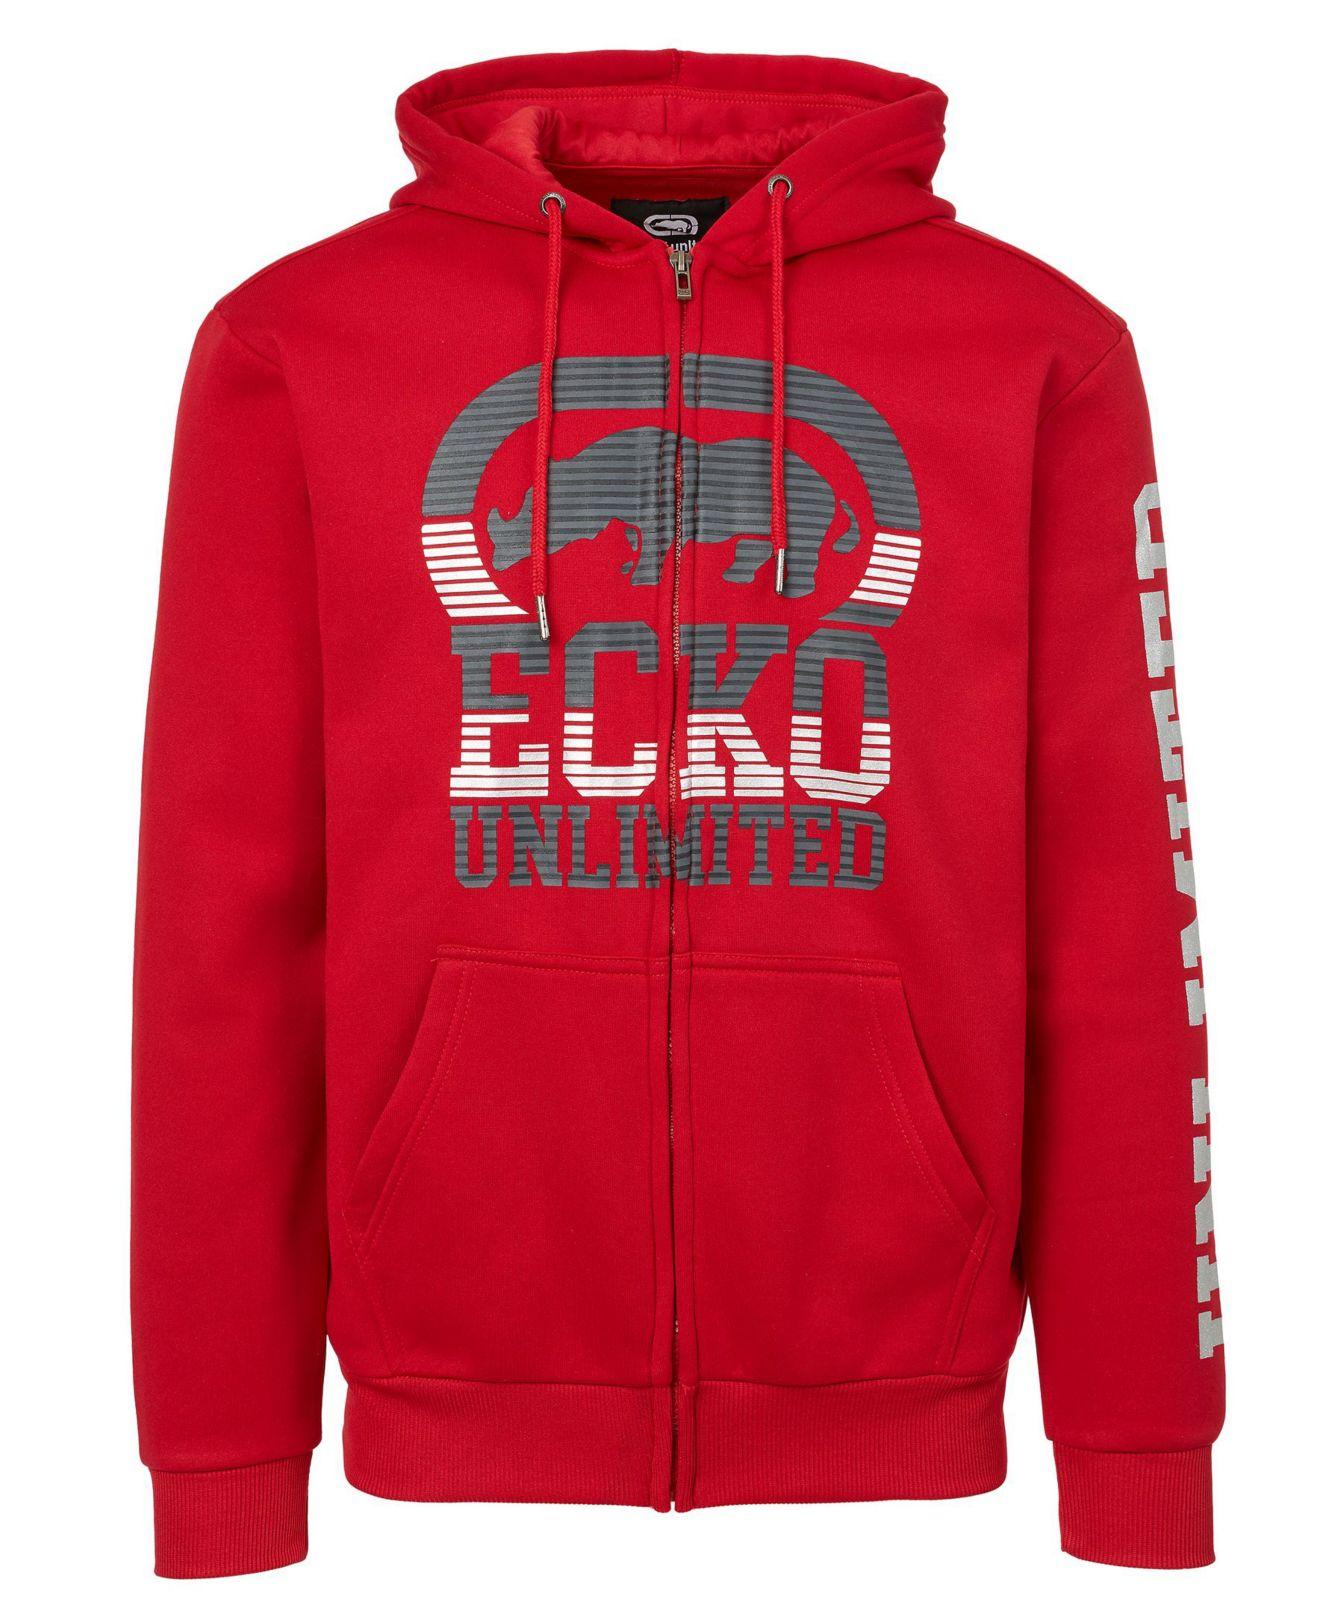 Ecko' Unltd Fleece Big Hit Full Zip Hoodie in Red for Men - Lyst